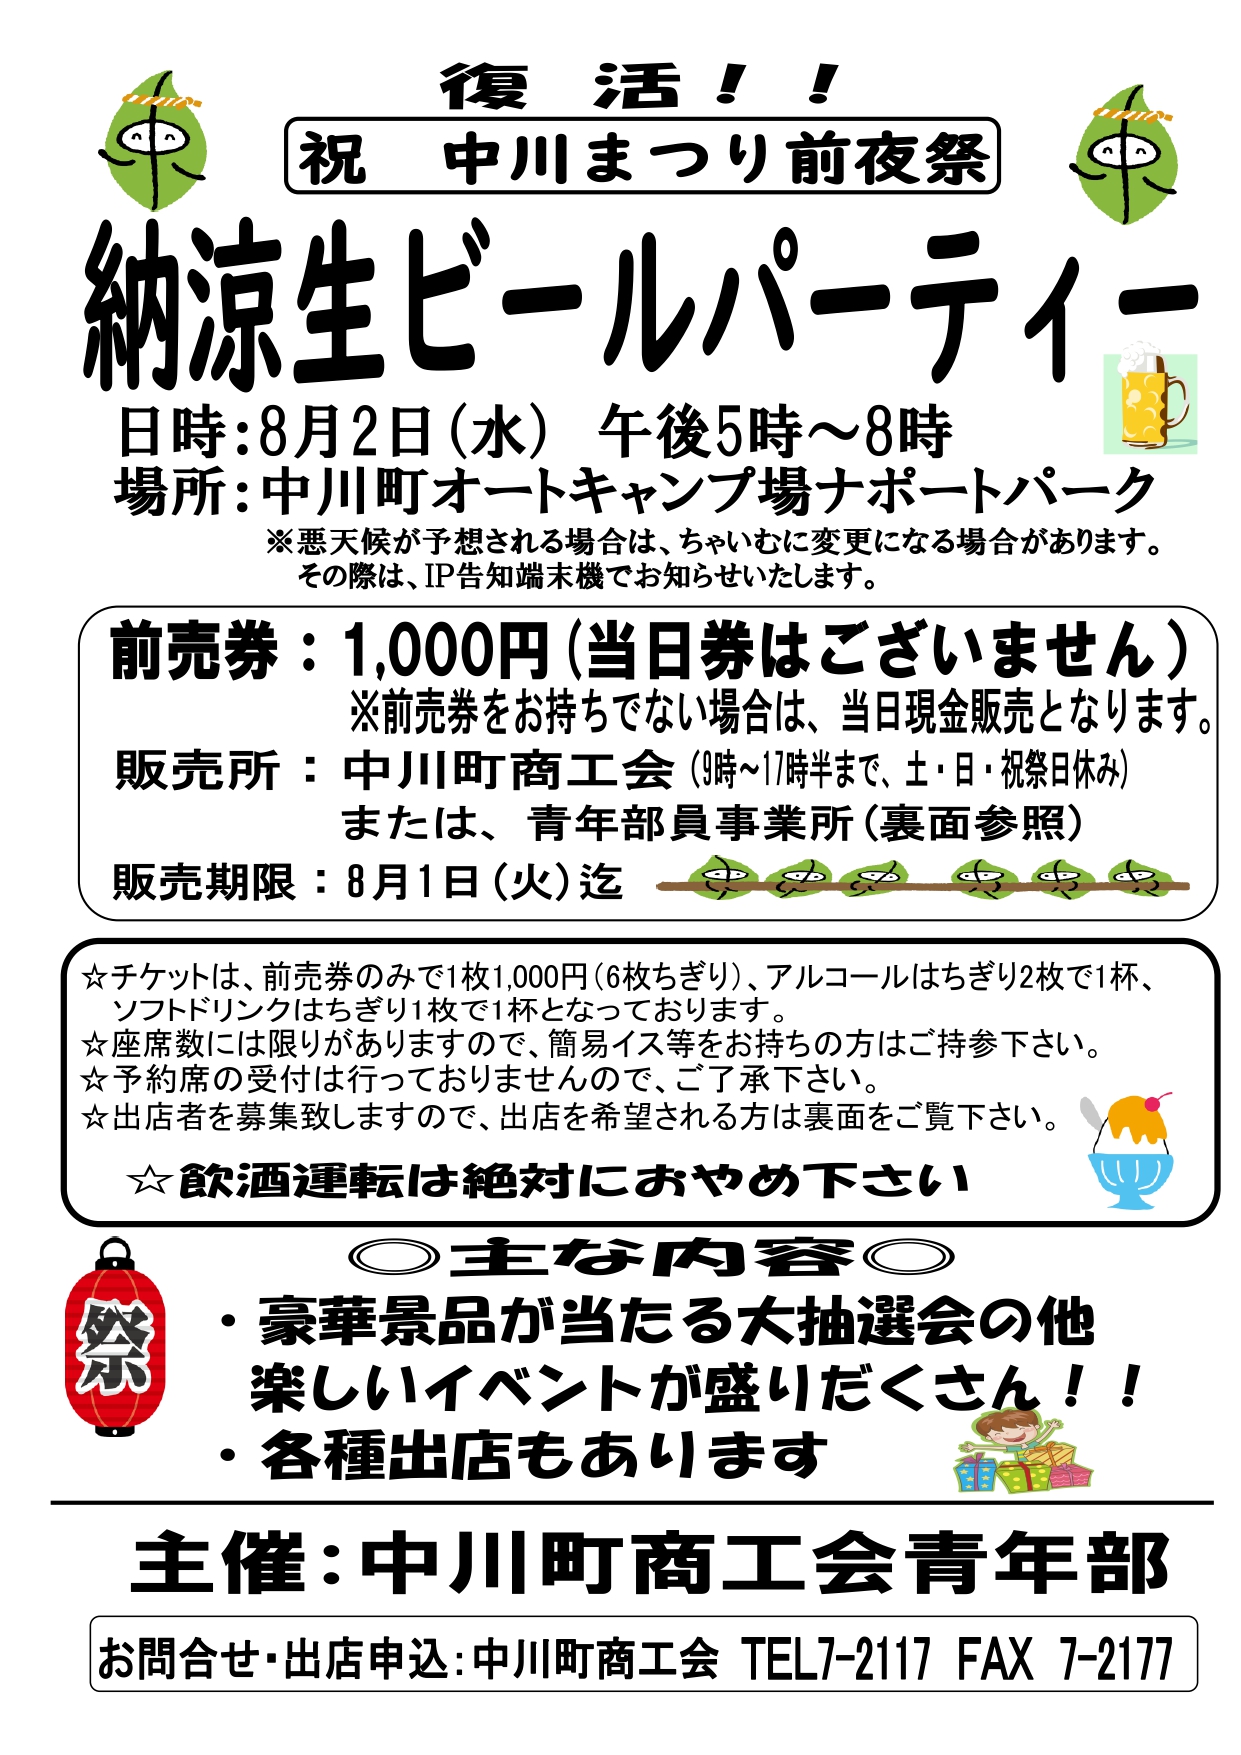 中川まつり前夜祭「納涼生ビールパーティー」開催のお知らせ